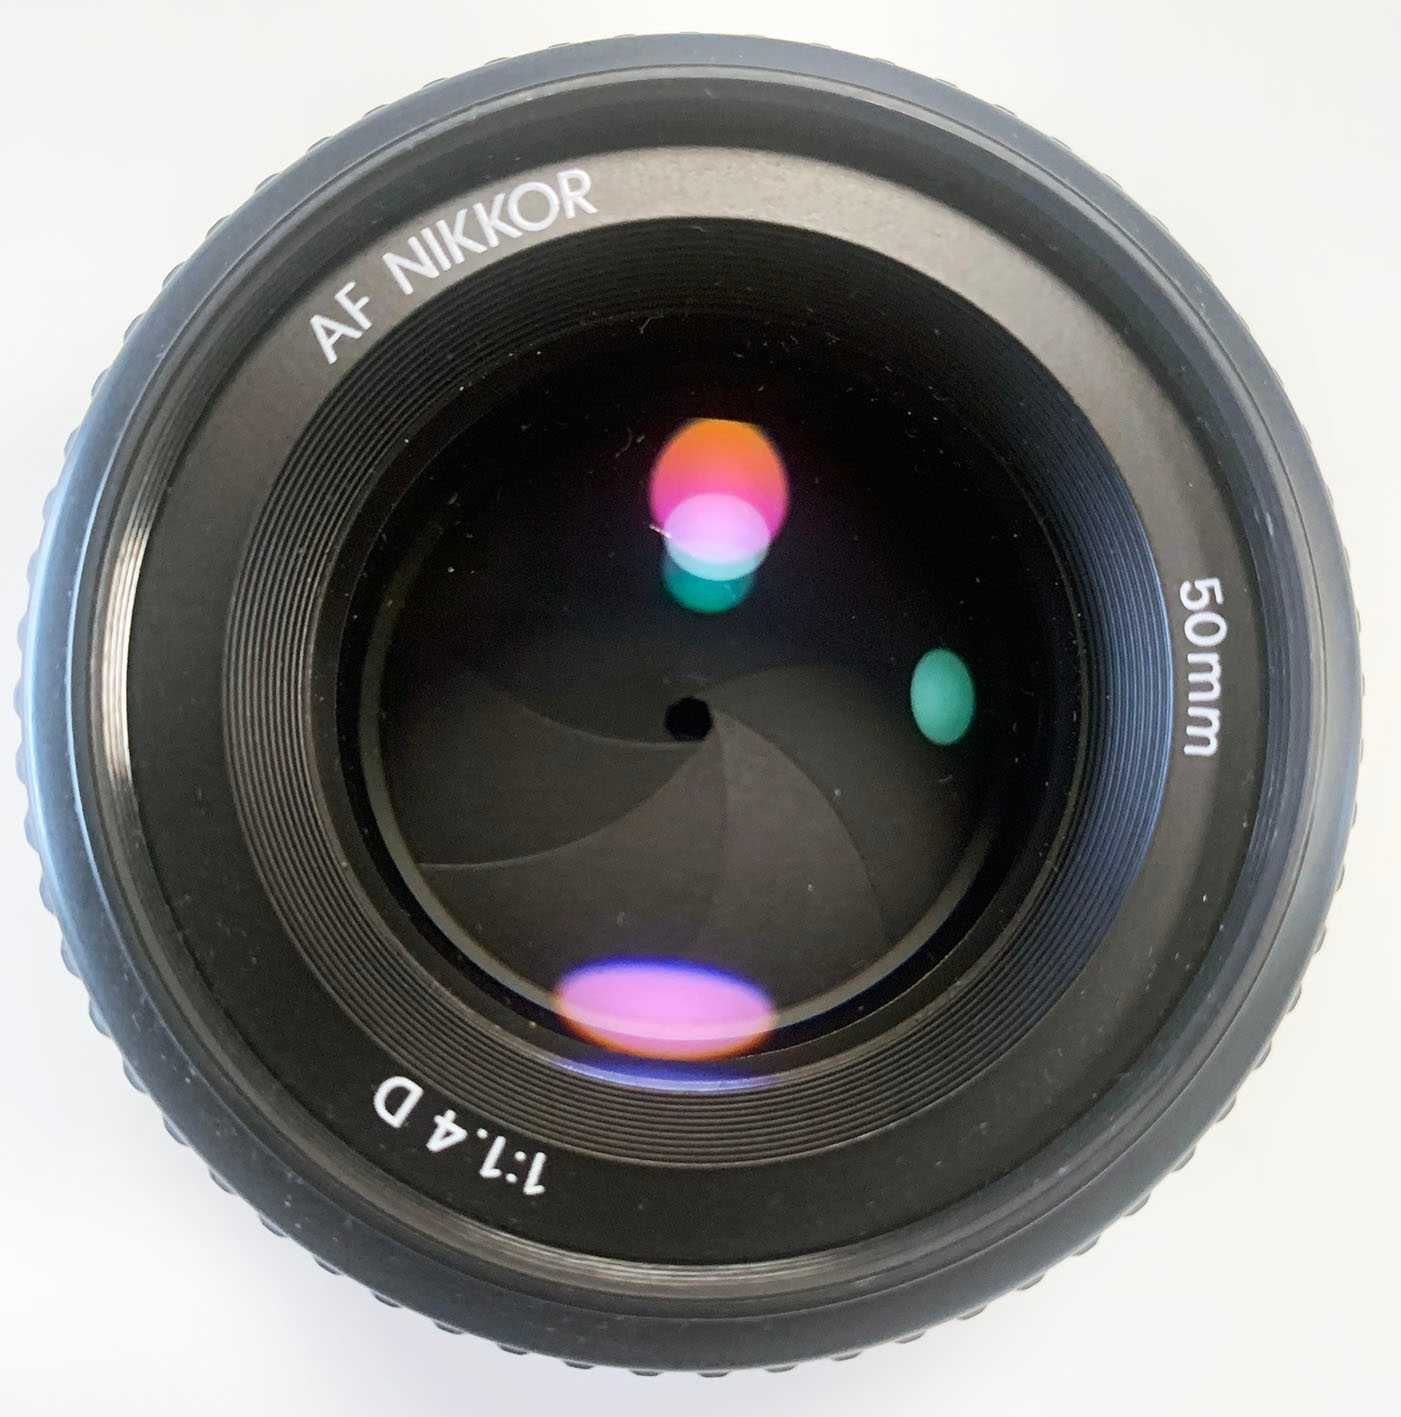 Obiektyw Nikon AF Nikkor 50mm f/1.4D stan idealny jak nowy